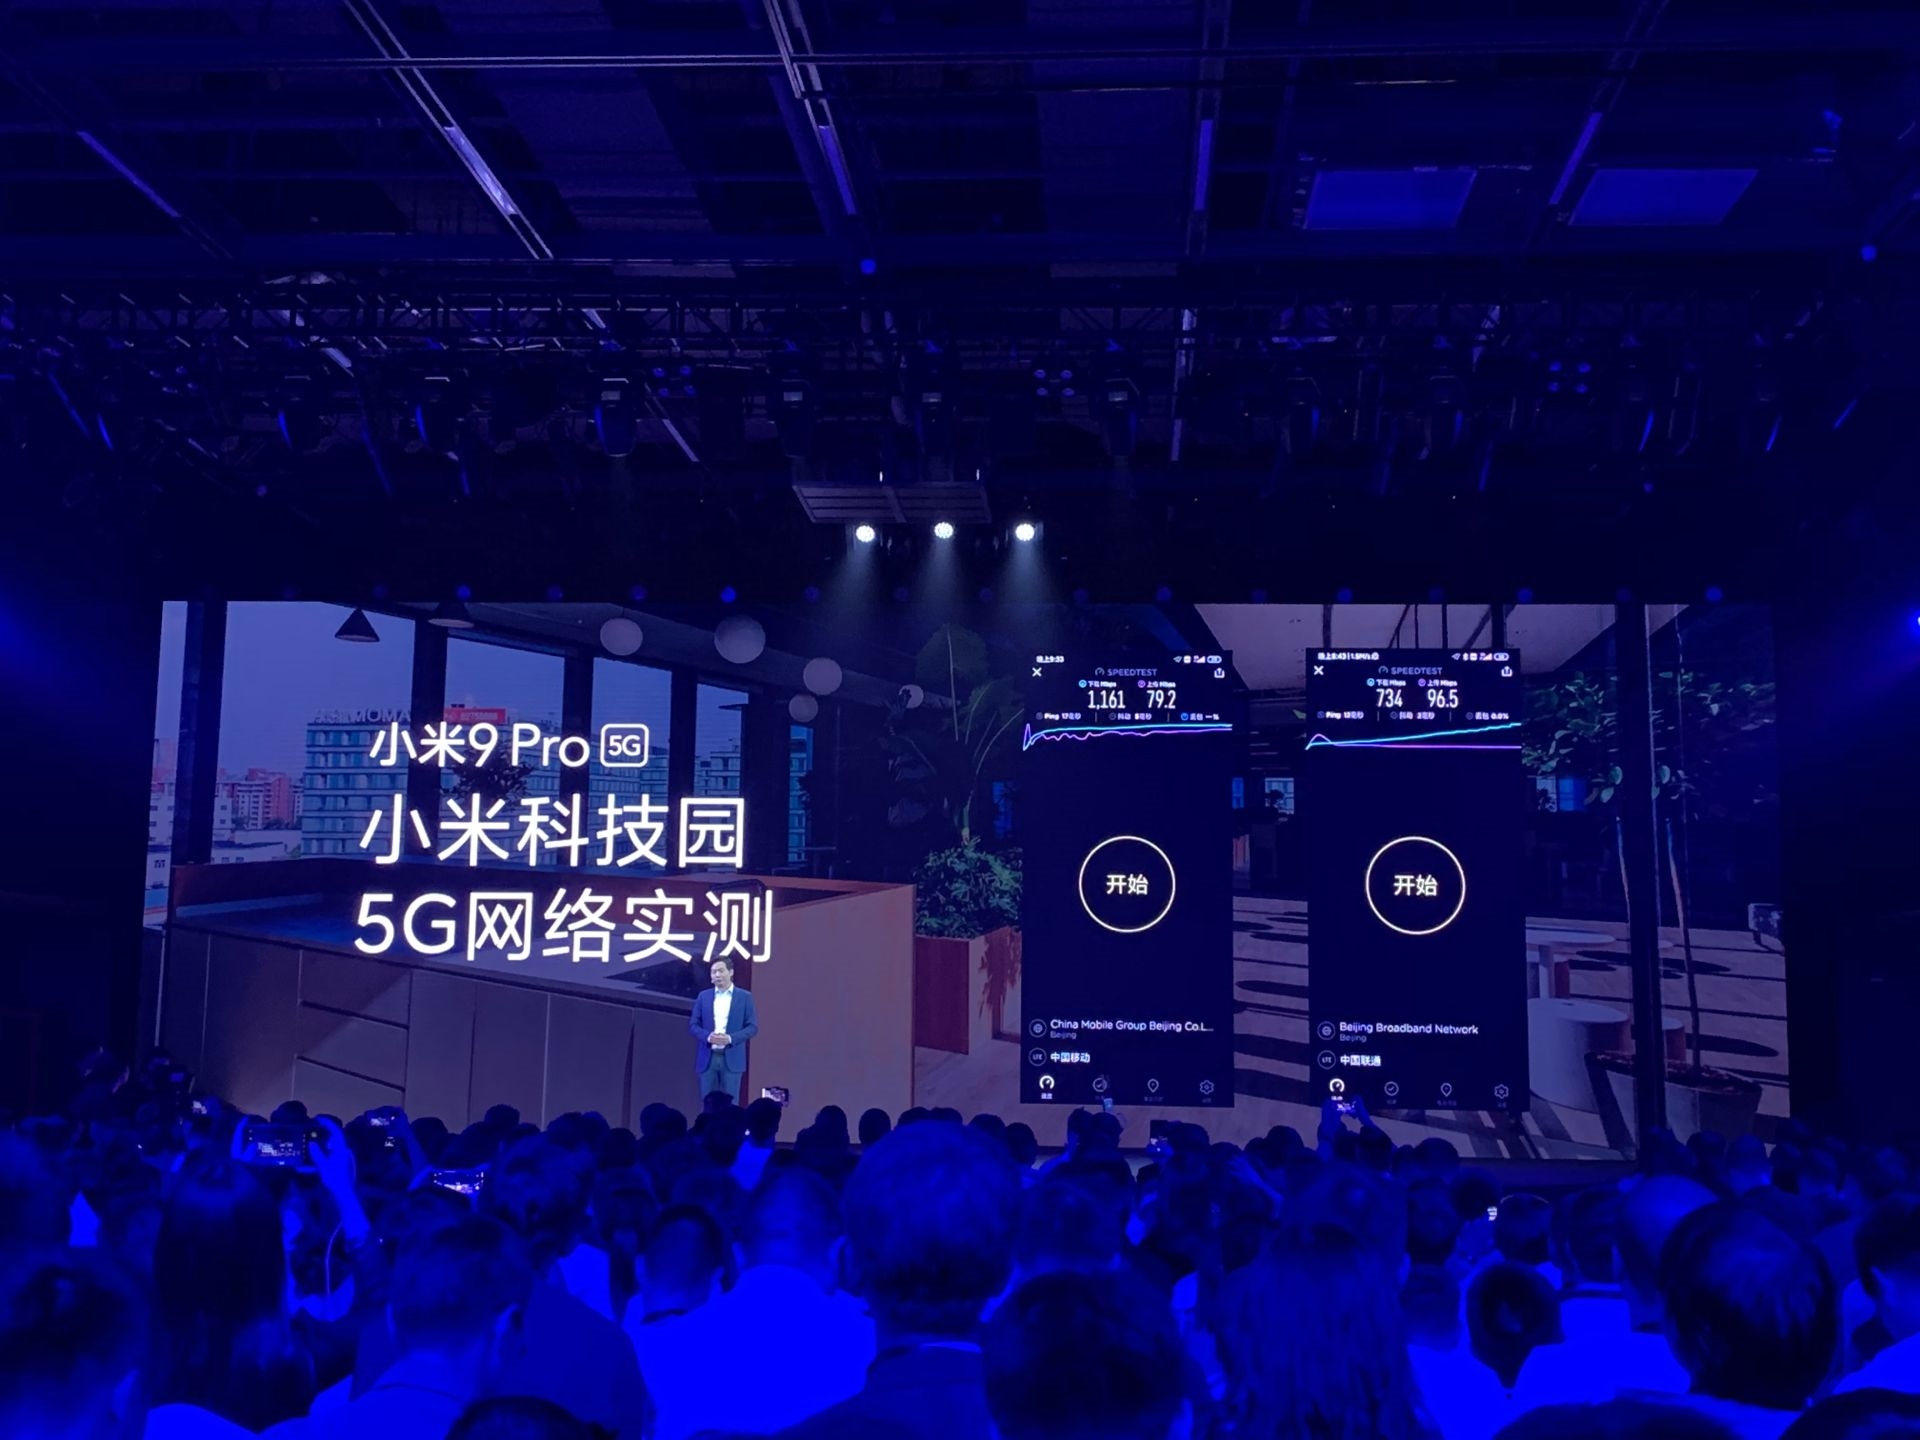 Xiaomi Mi 9 Pro 5G ra mắt với chip Snapdragon 855+, RAM 12GB